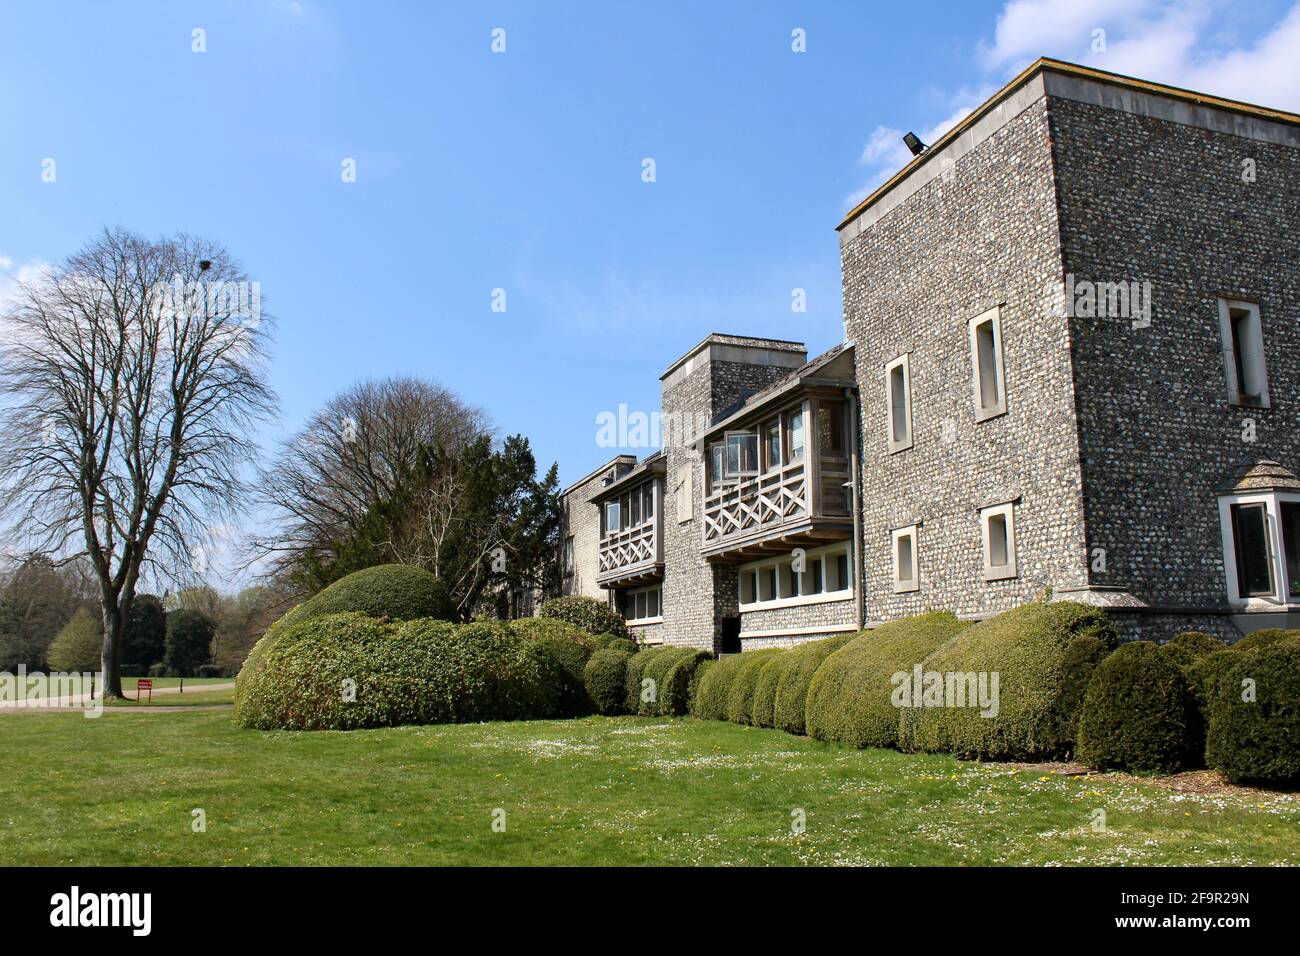 West Dean College vicino a Chichester, West Sussex. L'ex casa del surrealista Edward James. Fotografia scattata in una bella primavera. Foto Stock